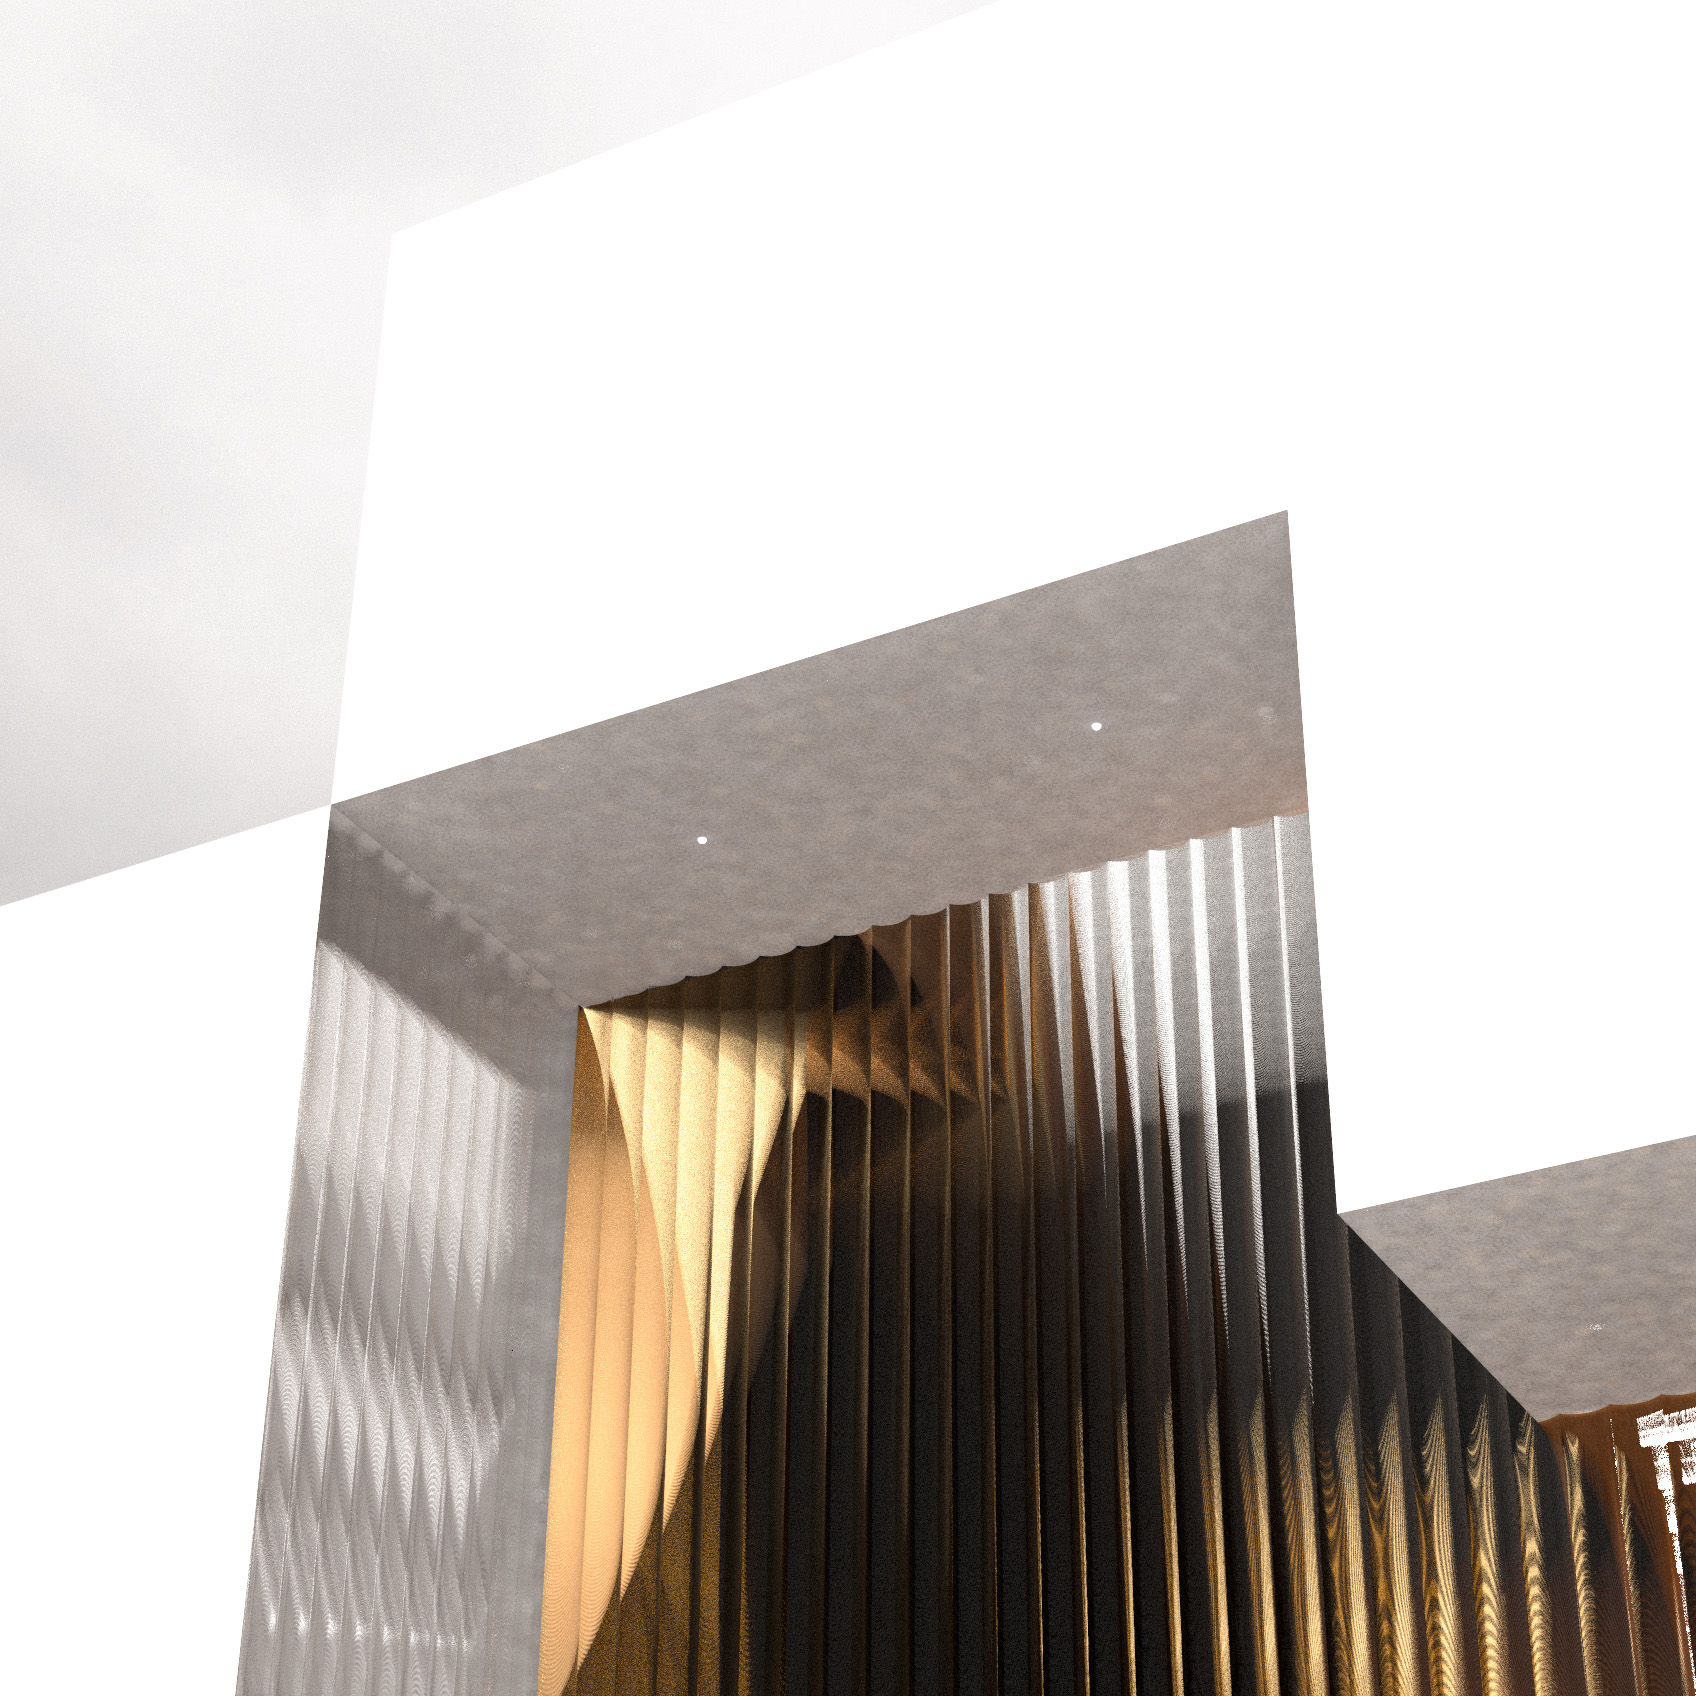 Project THE CASTLE & THE VINE by Recon Architecture, architecture studio in Bilbao